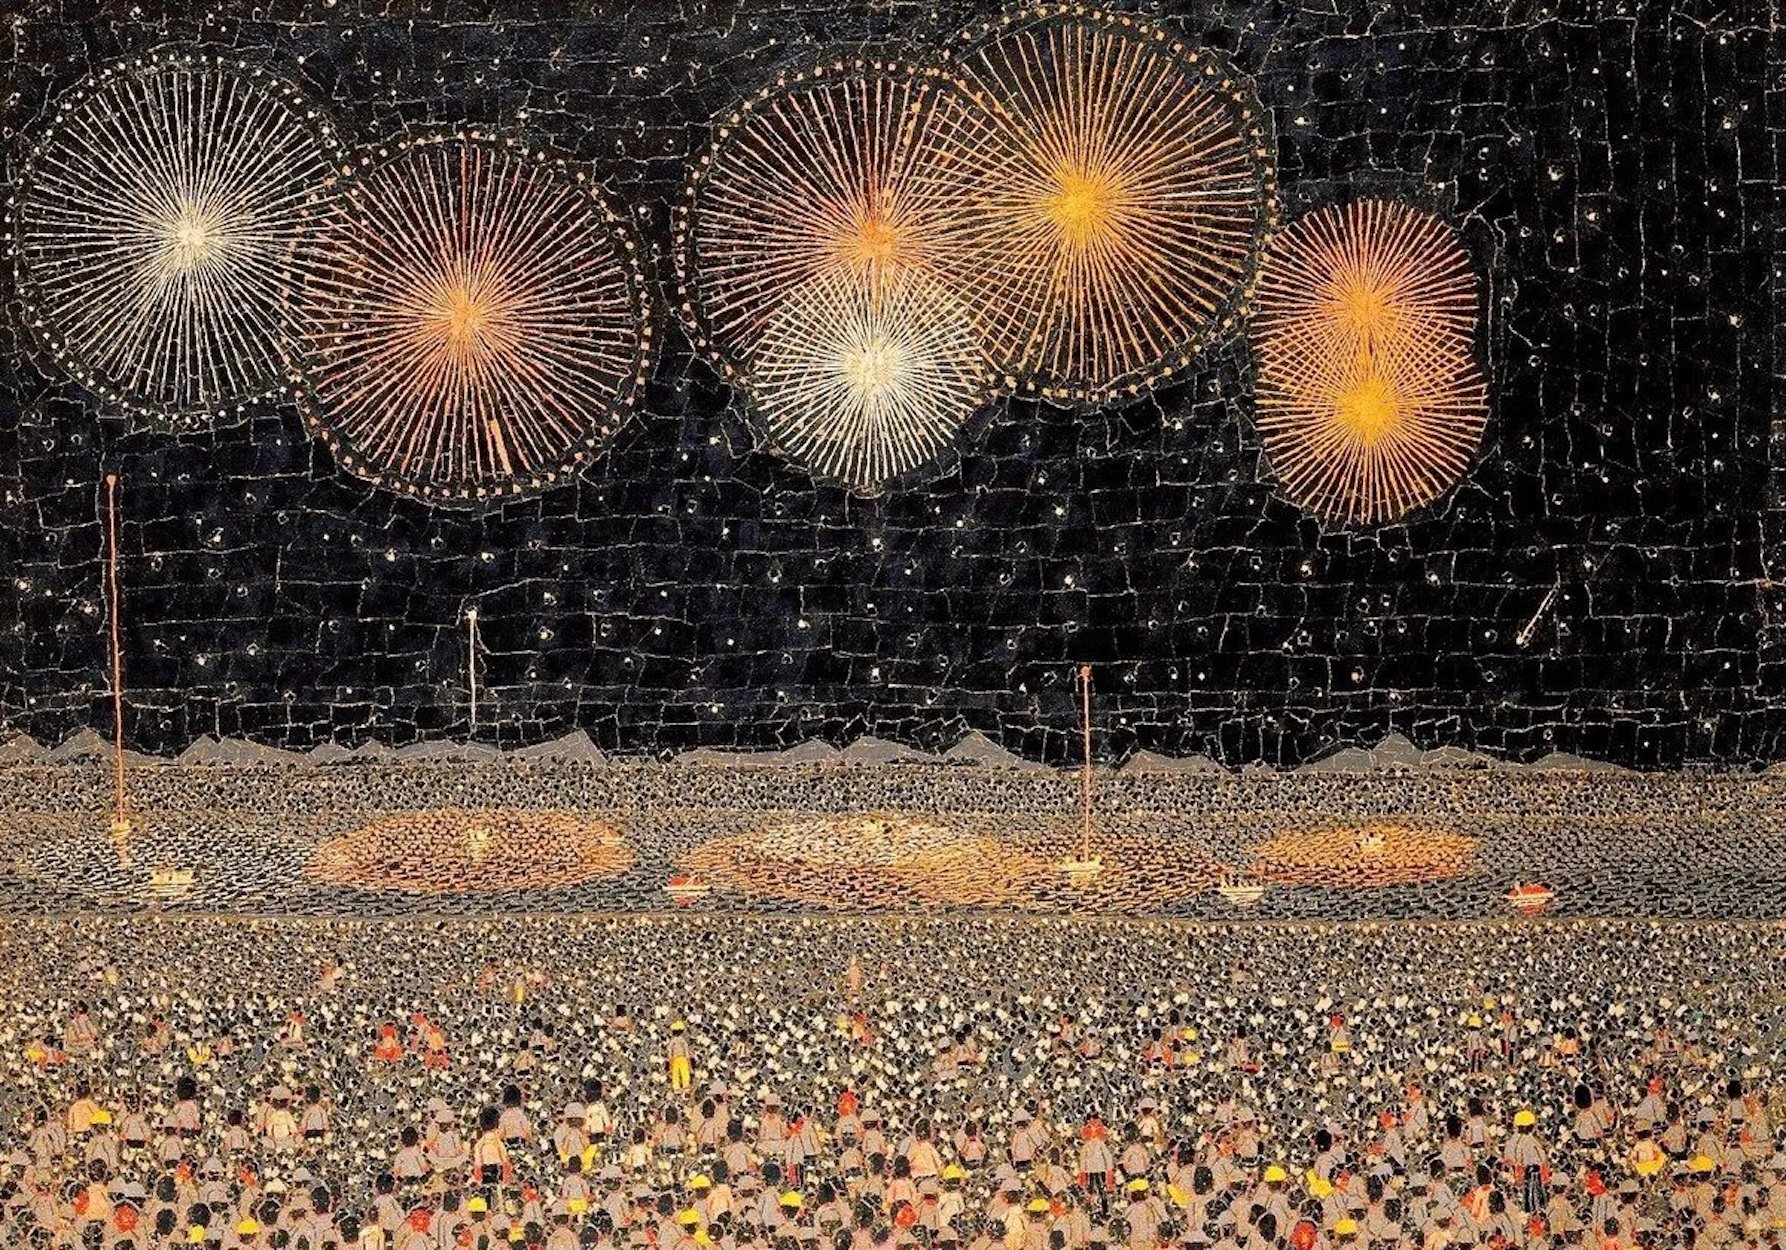 Fireworks in Nagaoka by Kiyoshi Yamashita - 1950 - 45 x 64 cm private collection